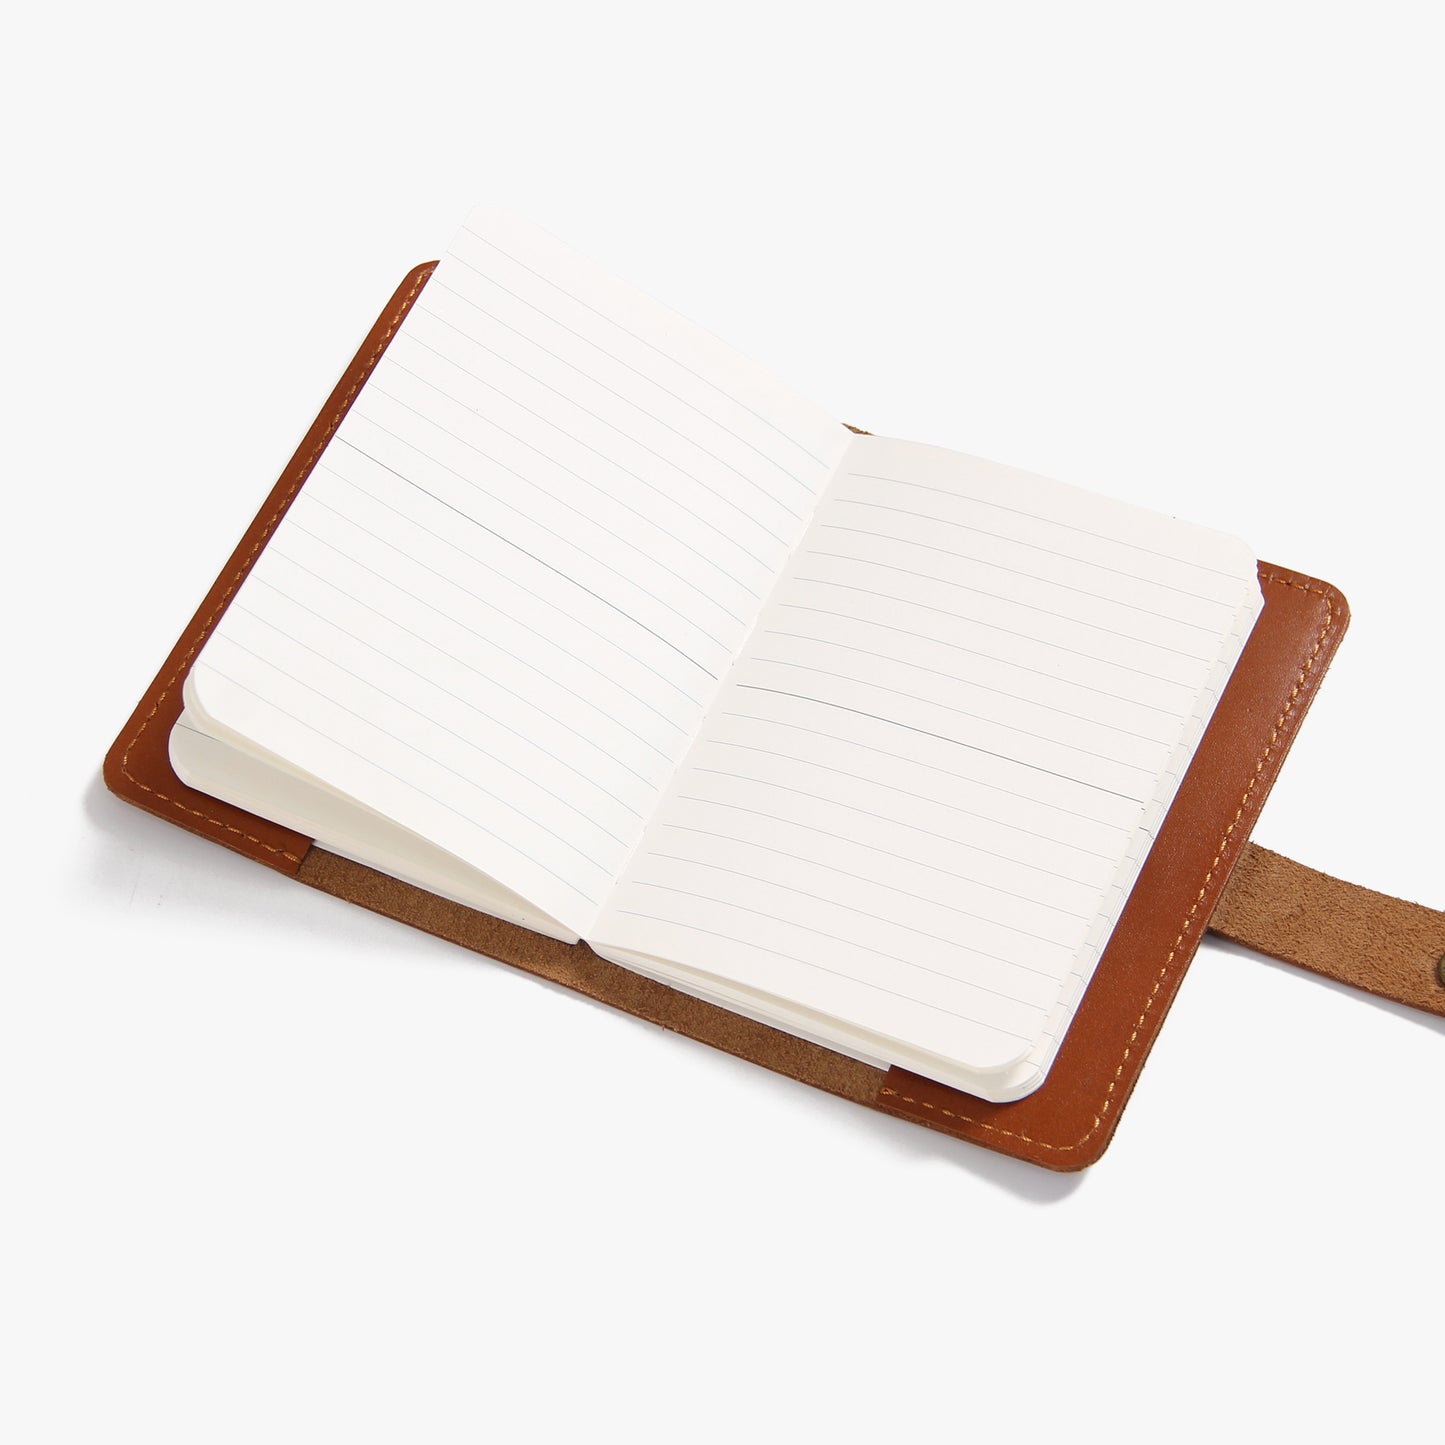 Nachfüllbares Leder-Tagebuch im A6-Format. Personalisiertes Leder-Tagebuch